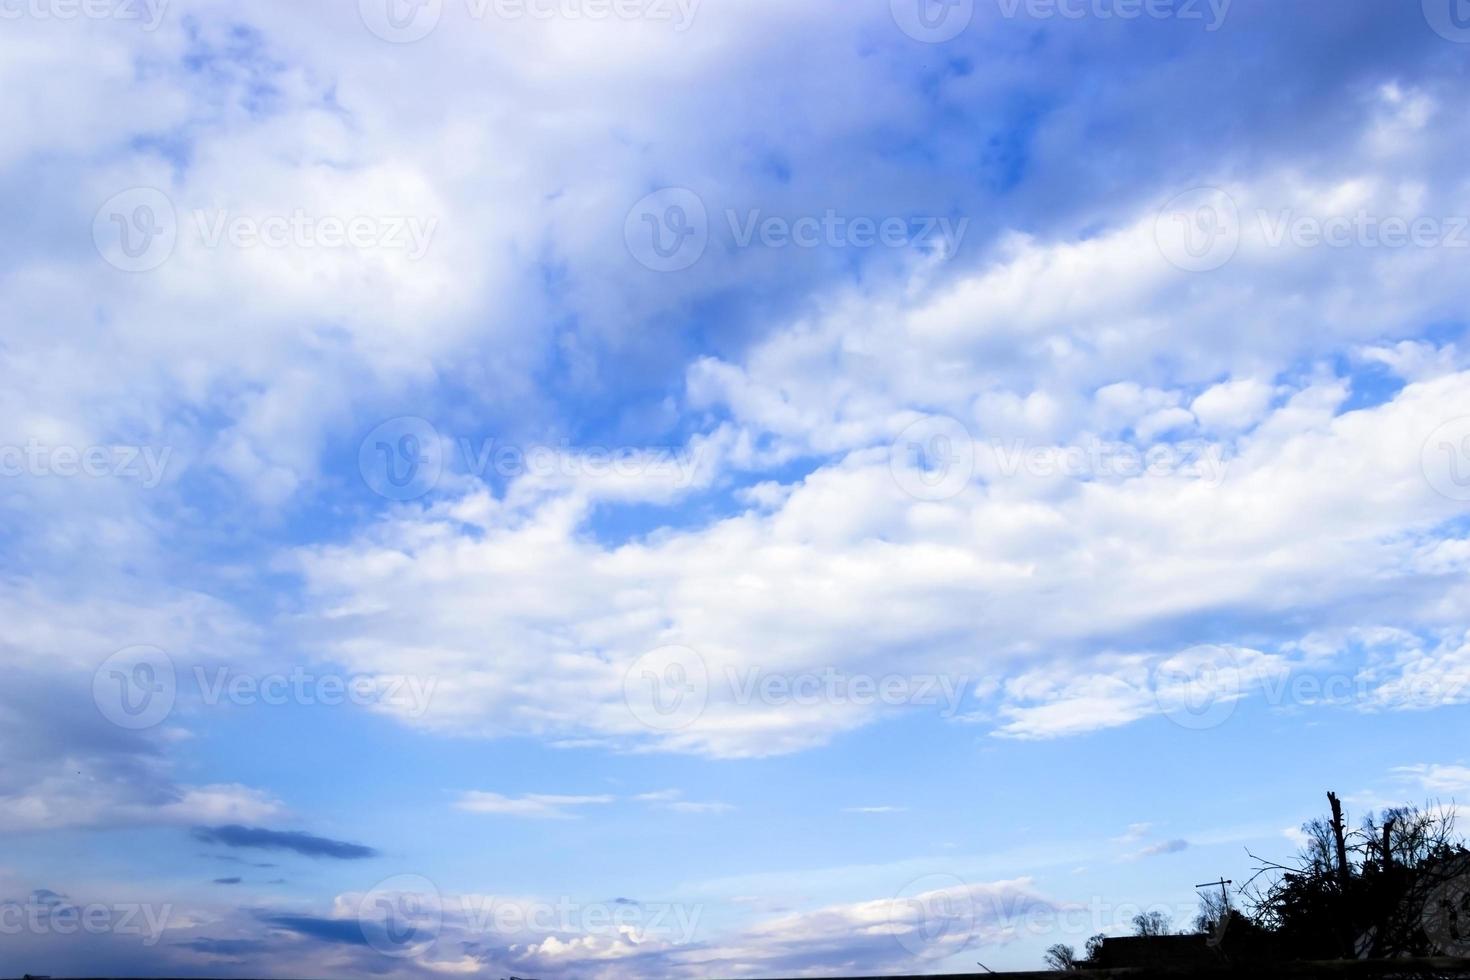 nuvole e sfondo azzurro del cielo con spazio di copia foto